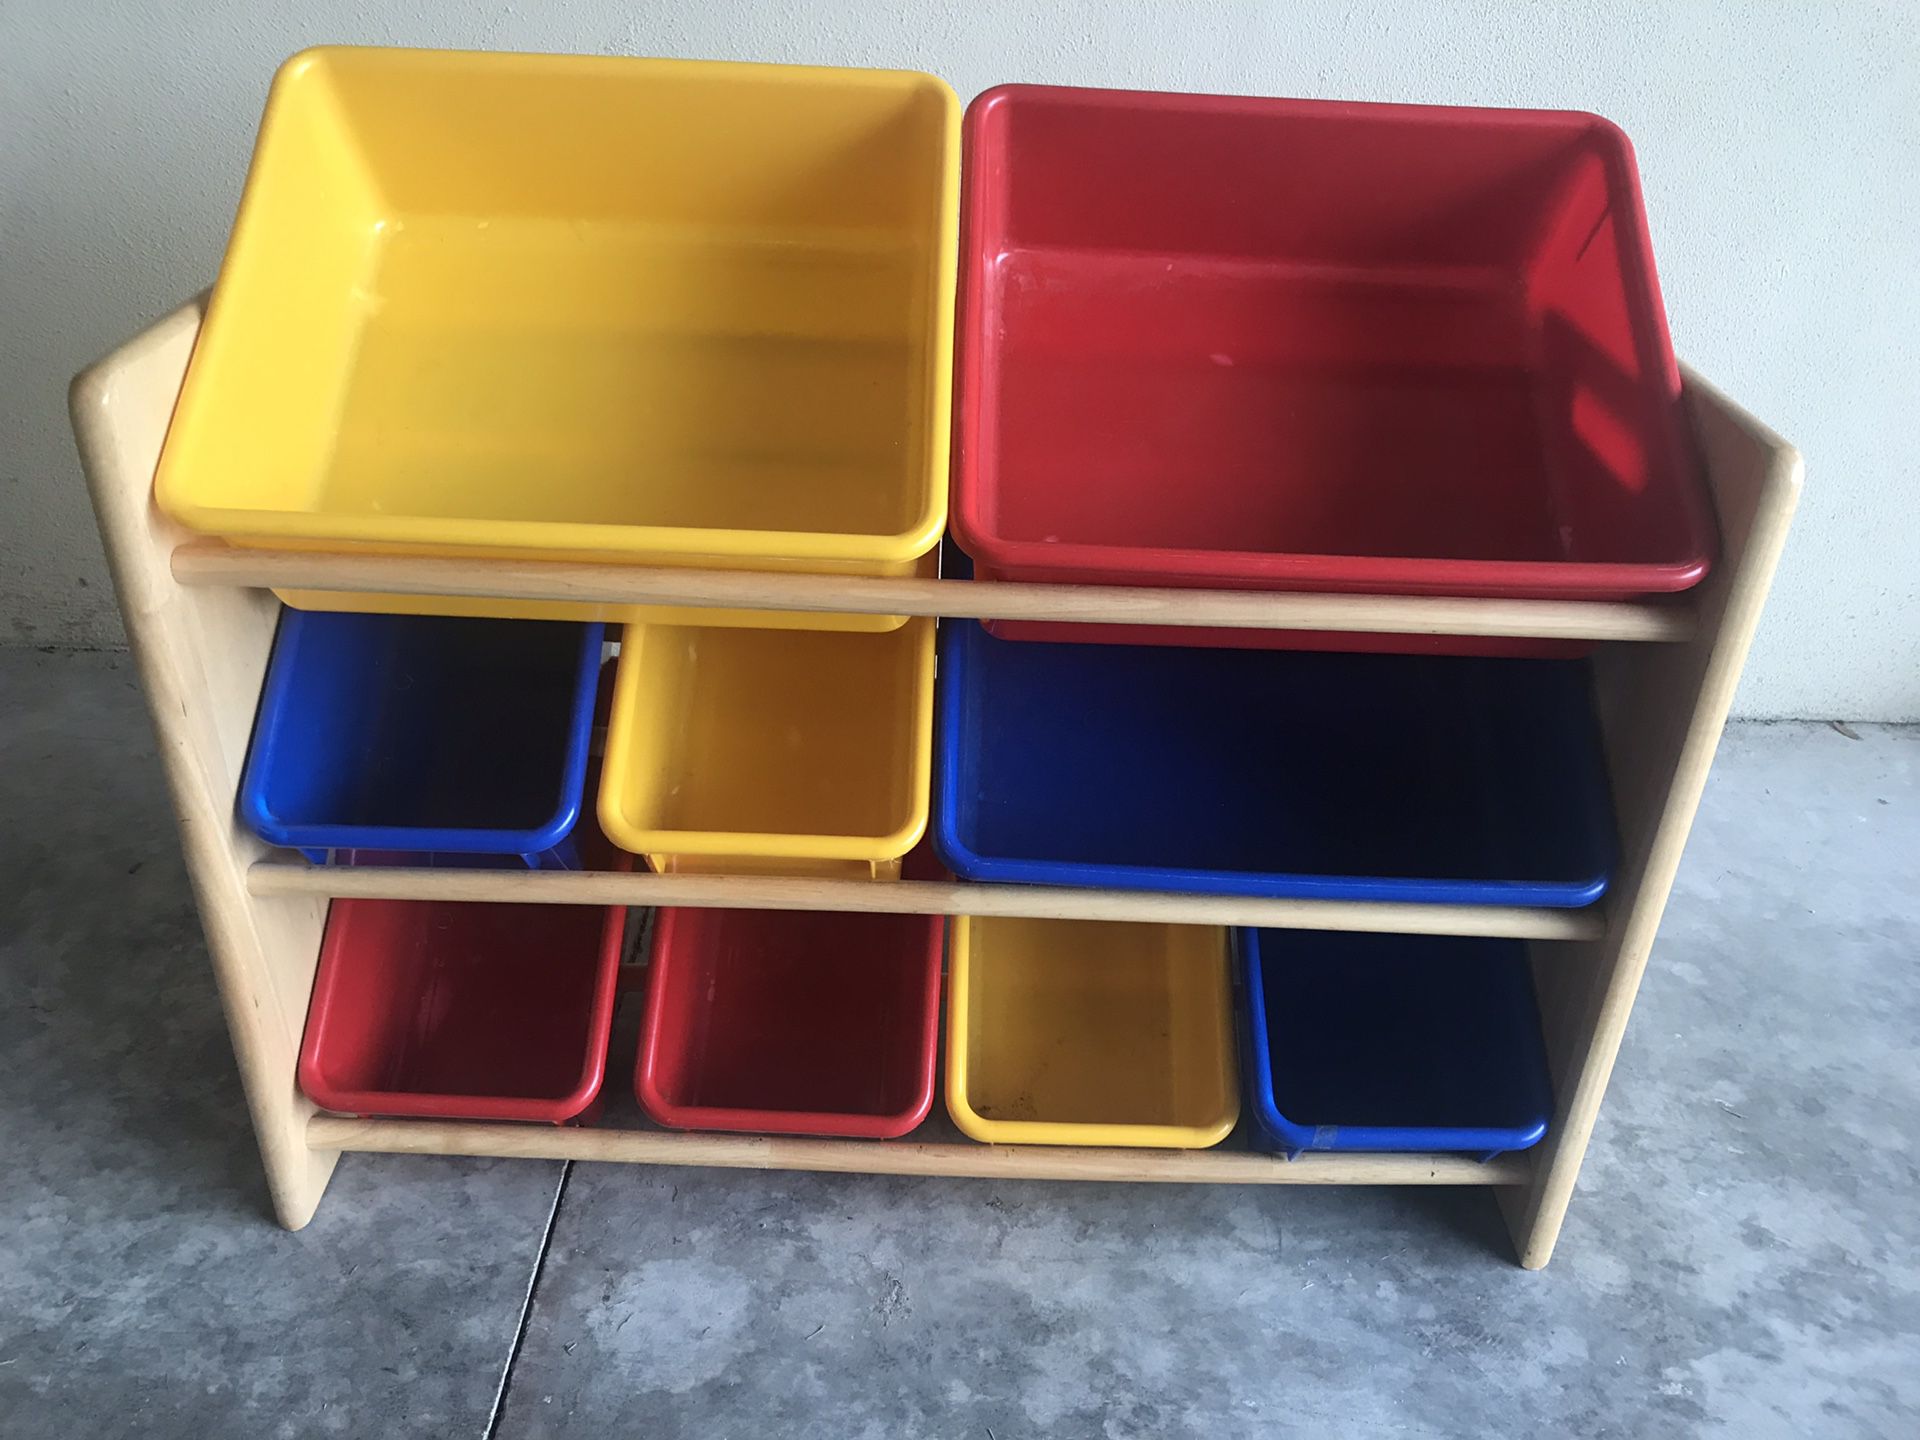 Wood Toy Box Storage Organizer Shelf with Plastic Bins